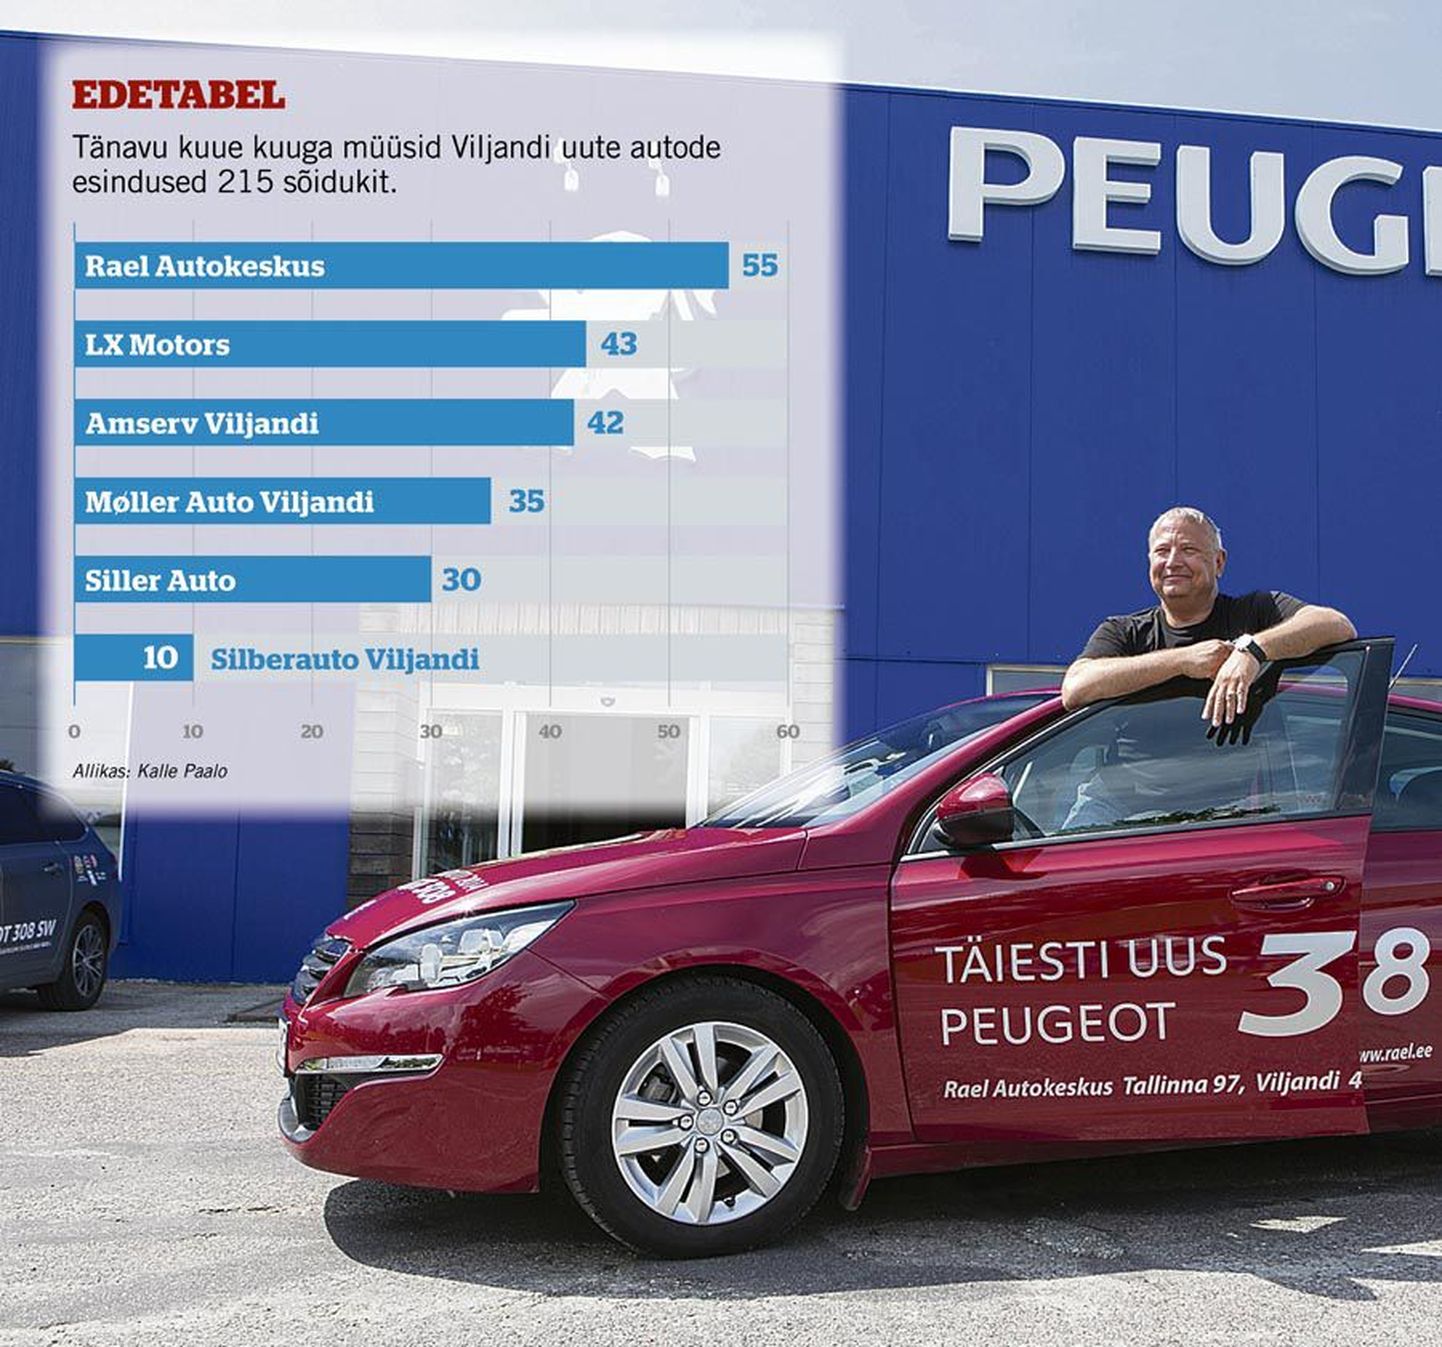 Rael Autokeskuse tänavused korralikud müügitulemused tulenevad müügijuht Kalle Paalo sõnul muu hulgas sellest, et Peugeot’ mudelivalik on täienenud. Pildil poseerib ta Peugeot 308-ga.